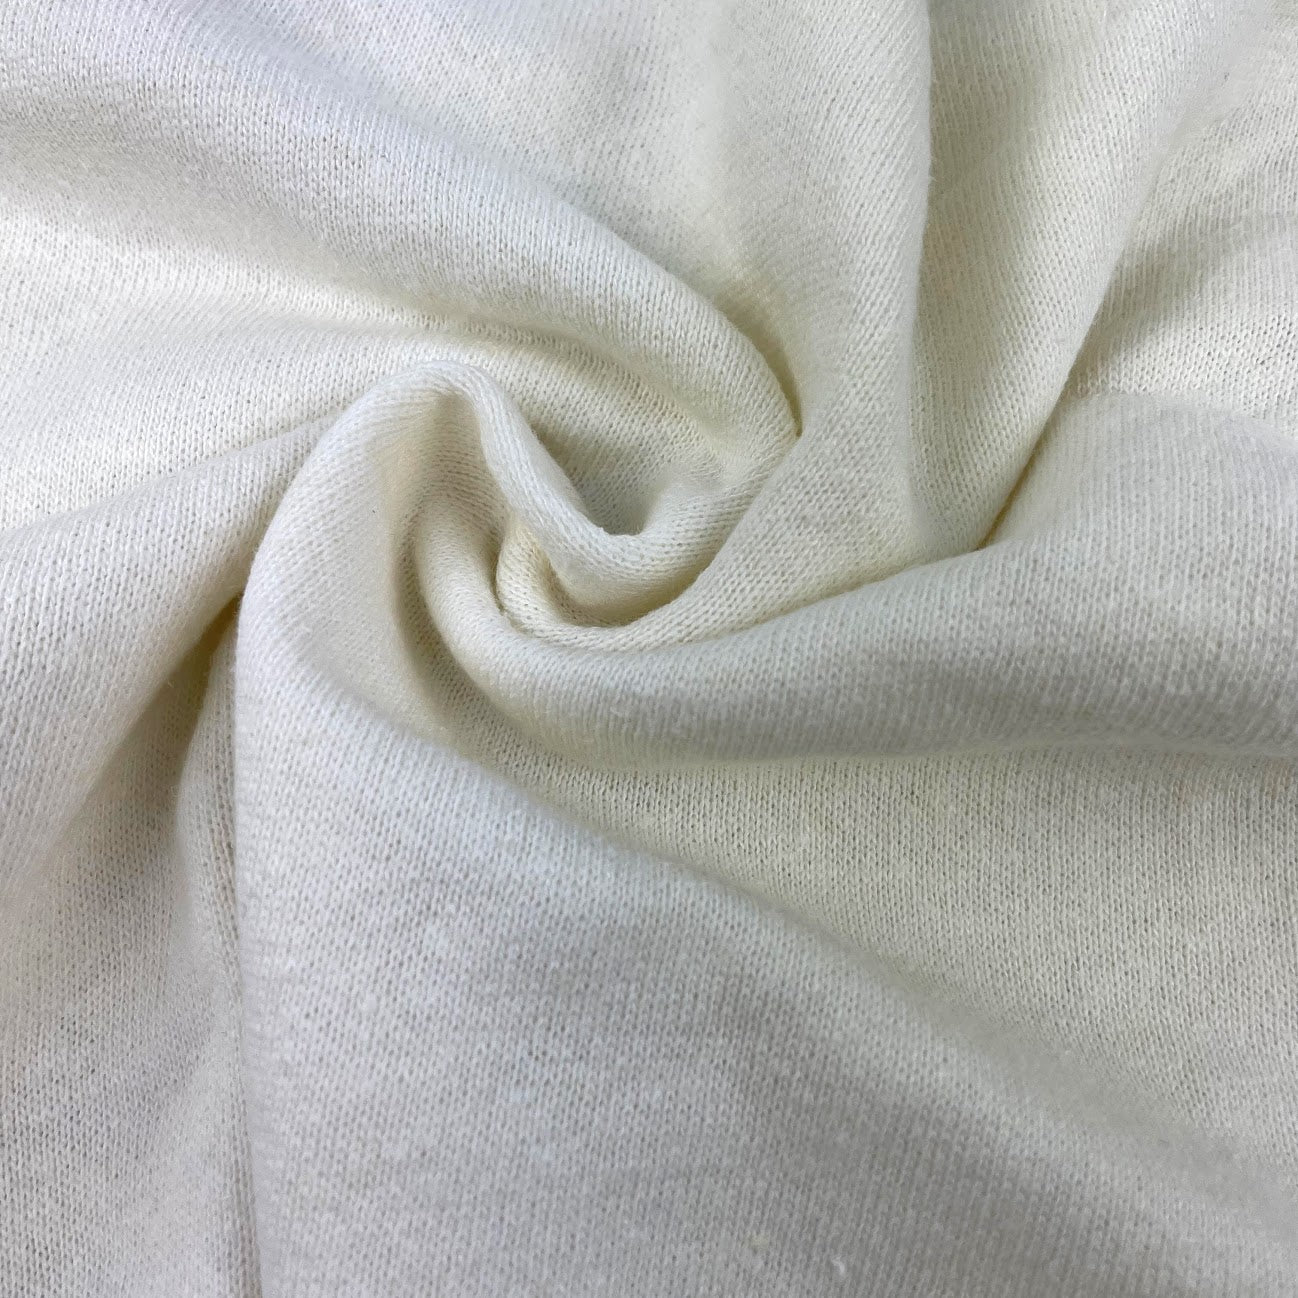 Knits – Riverside Fabrics